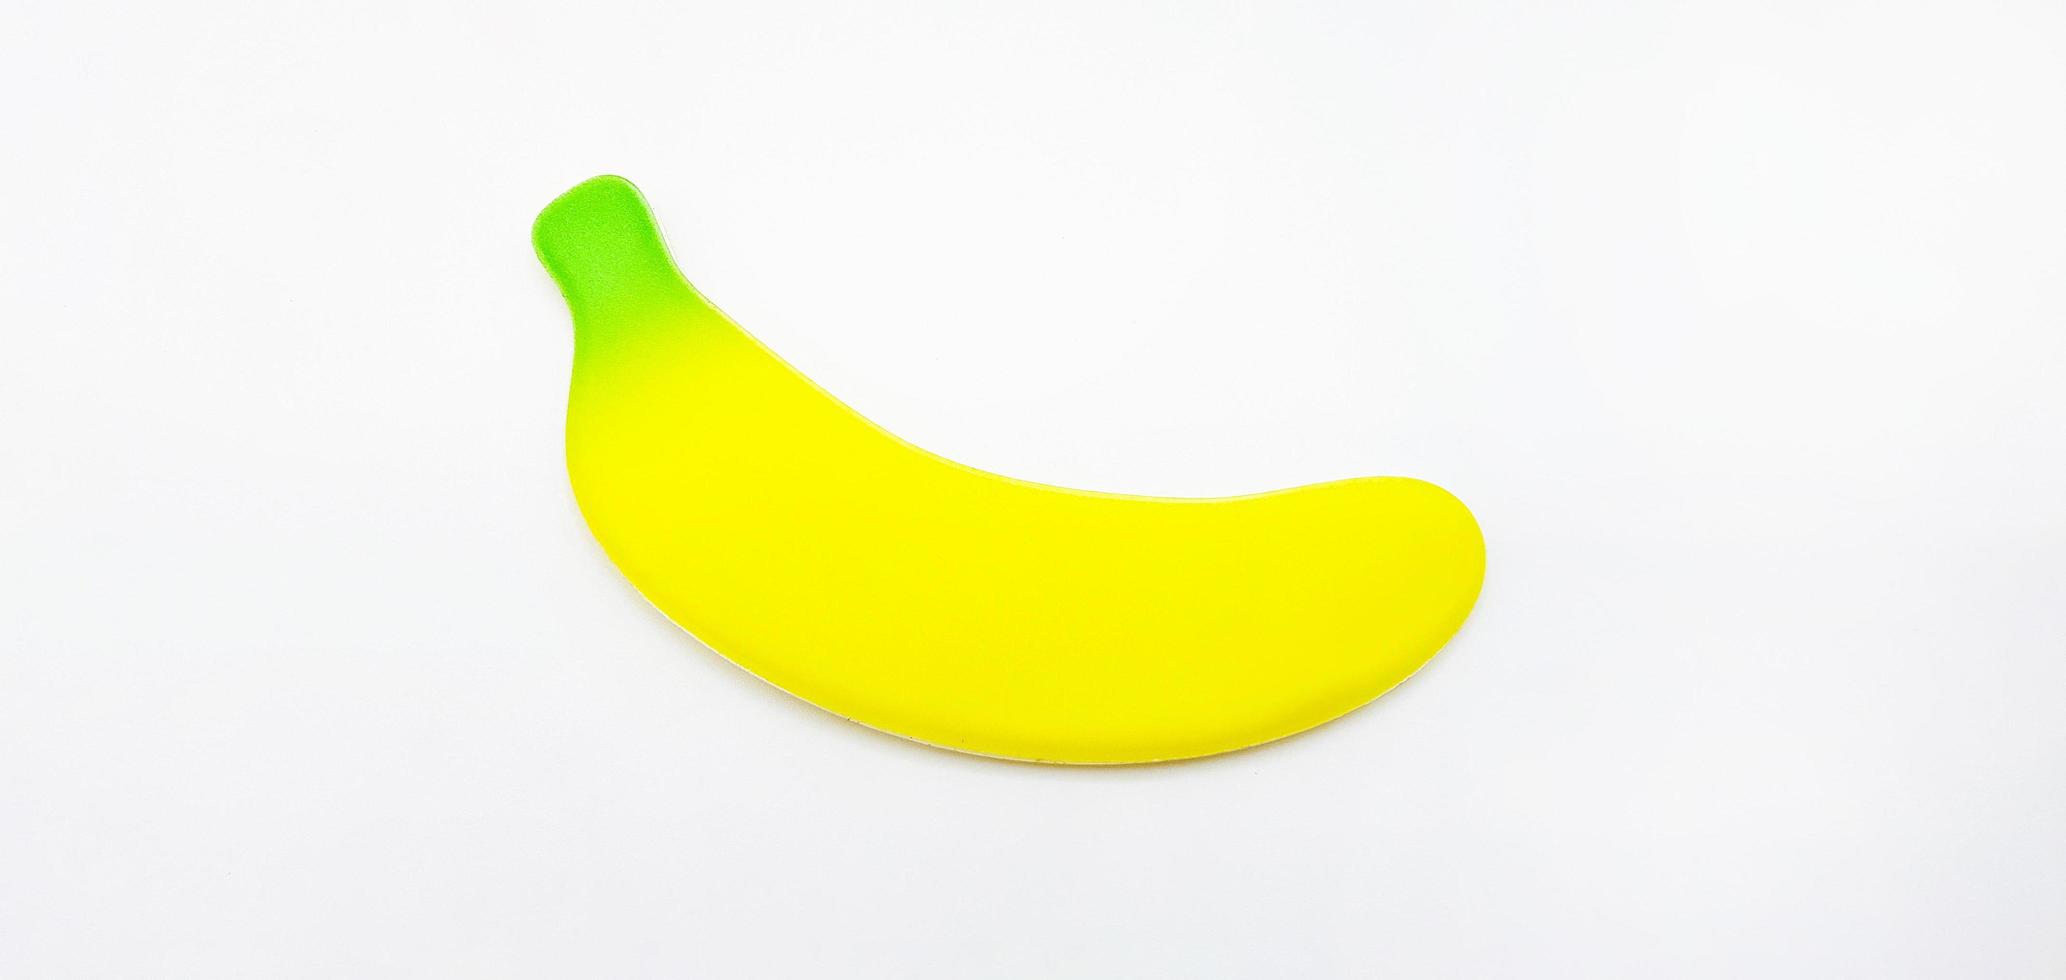 banana falsa isolada no fundo branco. pequeno brinquedo, forma e objeto. conceito. não é real de frutas foto